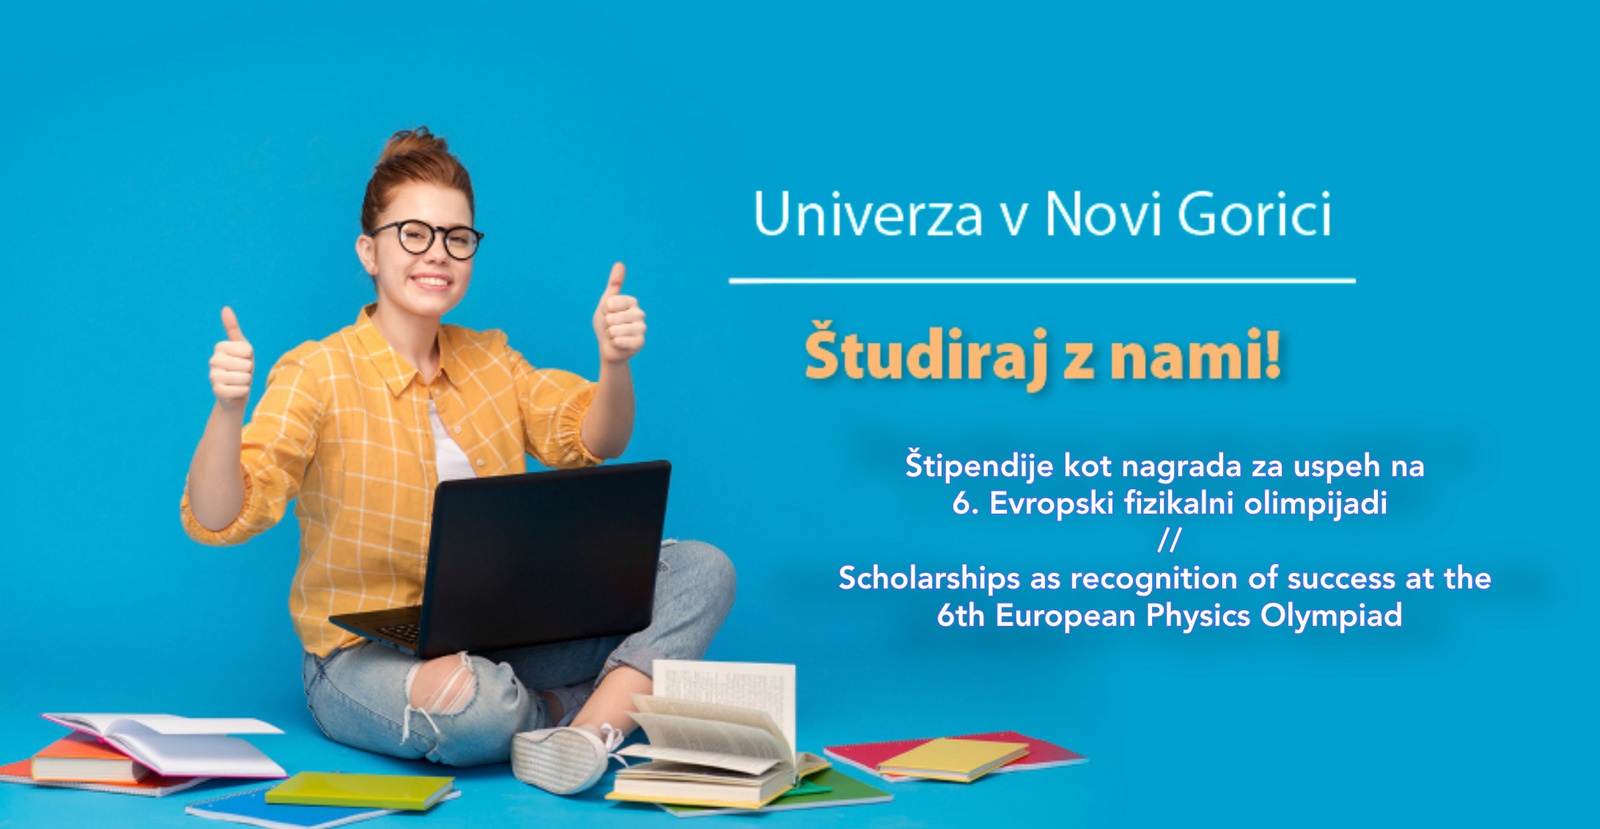 Univerza v Novi Gorici nudi štipendije kot nagrado za uspeh na 6. Evropski fizikalni olimpijadi, Ljubljana, 20.–24. 5. 2022